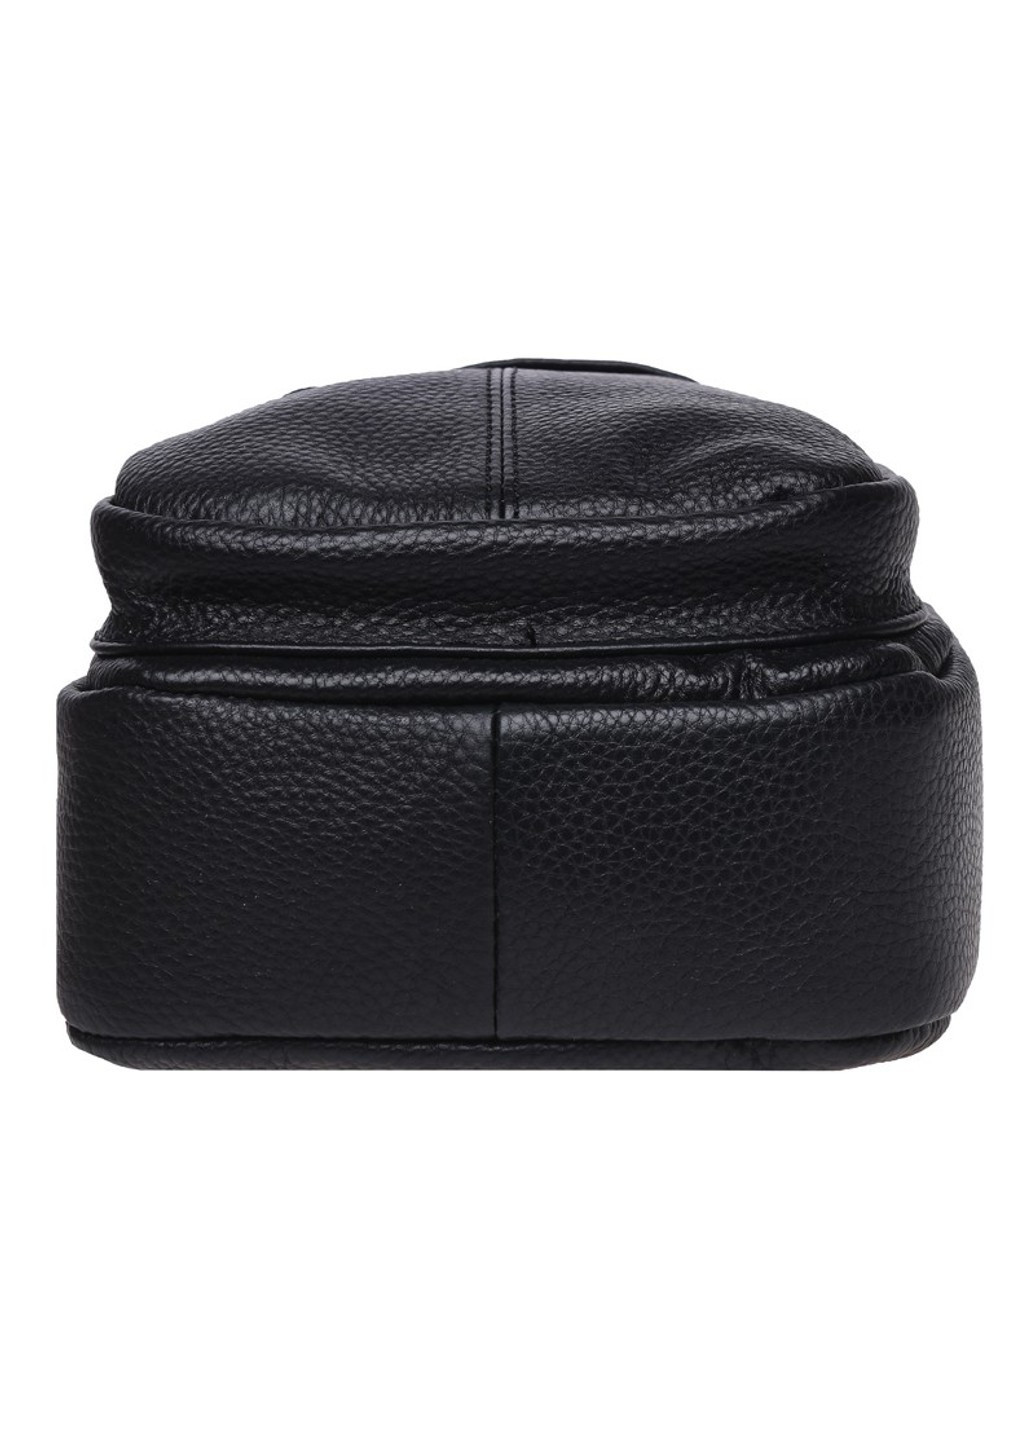 Мужской кожаный рюкзак K11023-black Keizer (266144053)